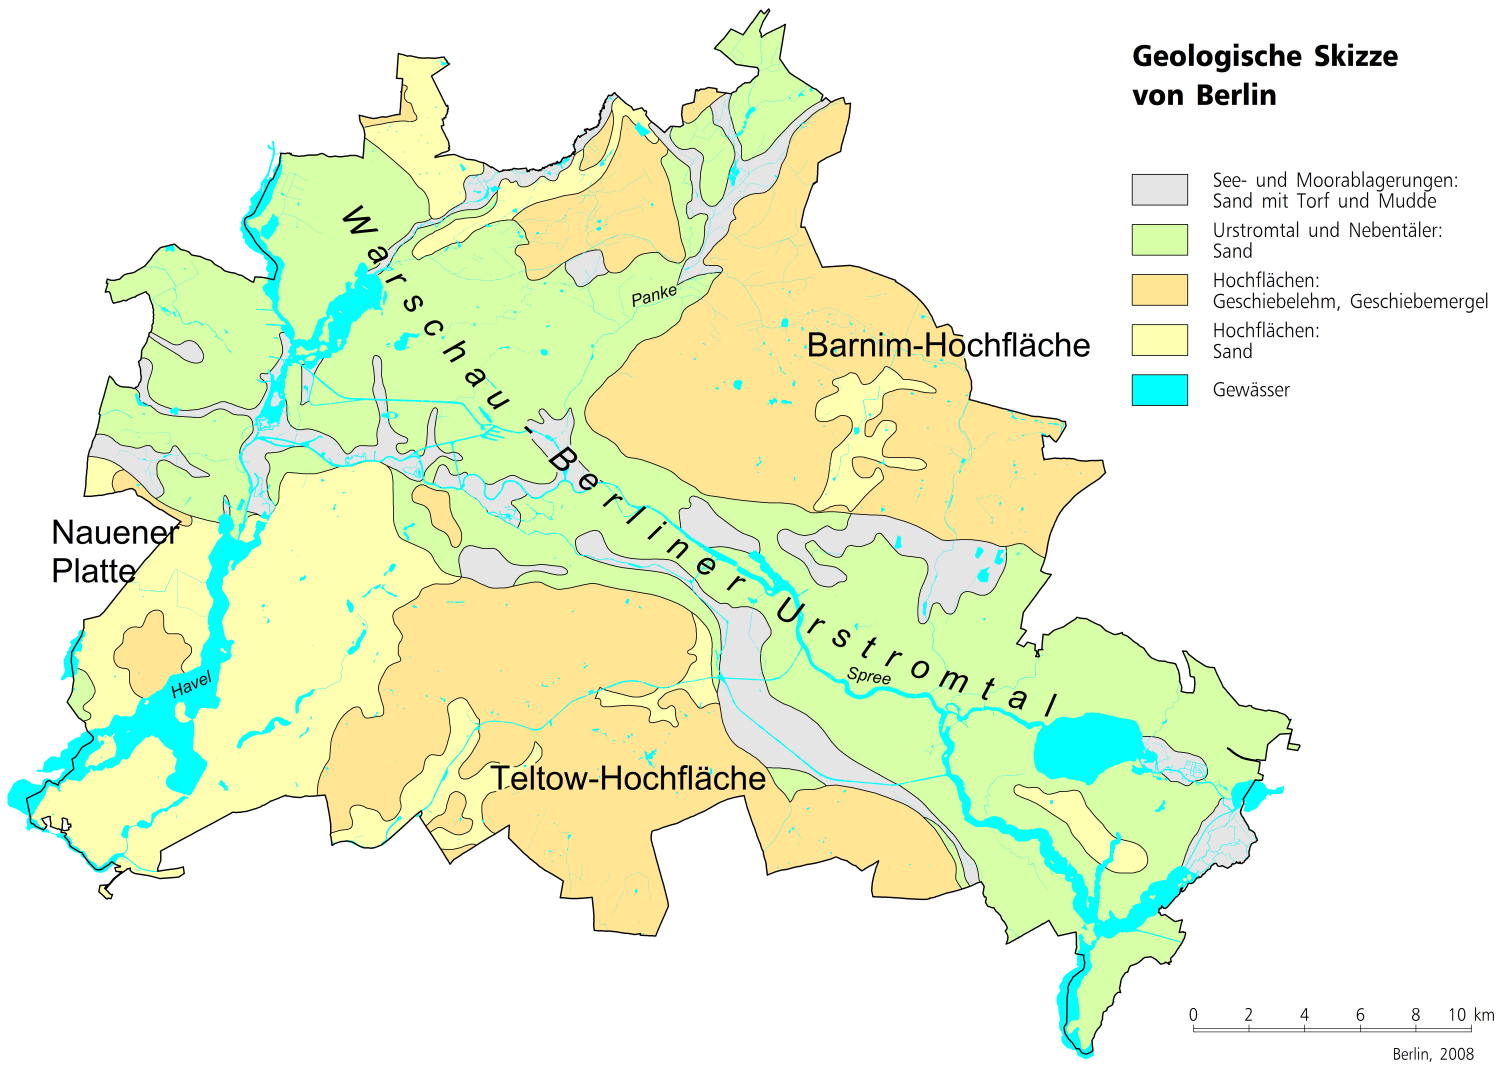 Bildvergrößerung: Geologische Skizze von Berlin 2008